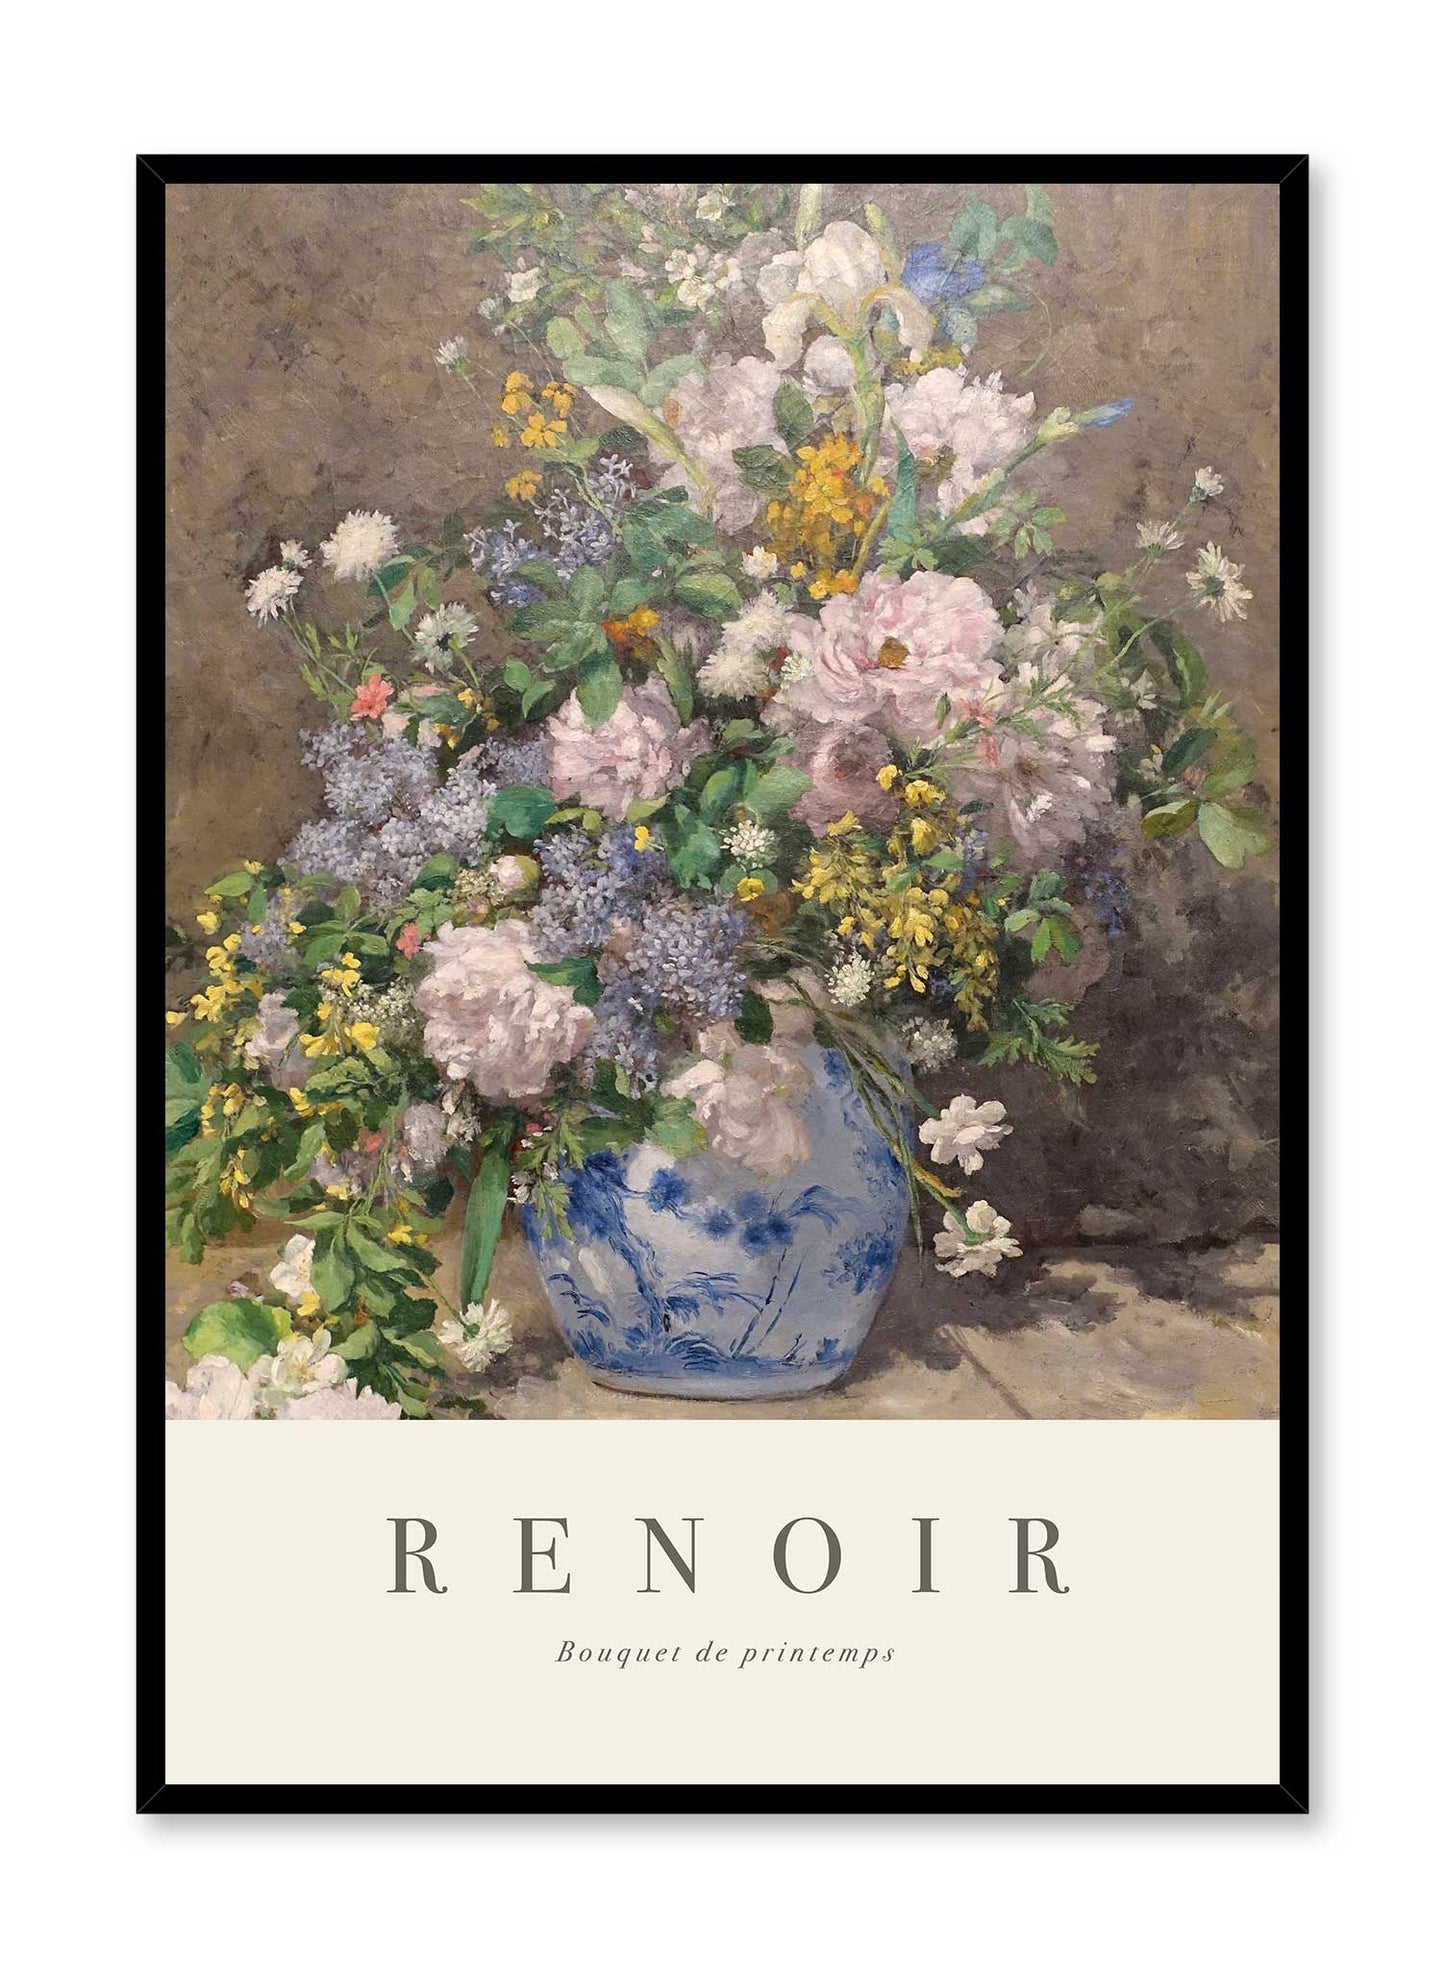 Renoir’s Spring Bouquet is a minimalist artwork by Opposite Wall of Pierre-Auguste Renoir's Bouquet de printemps.